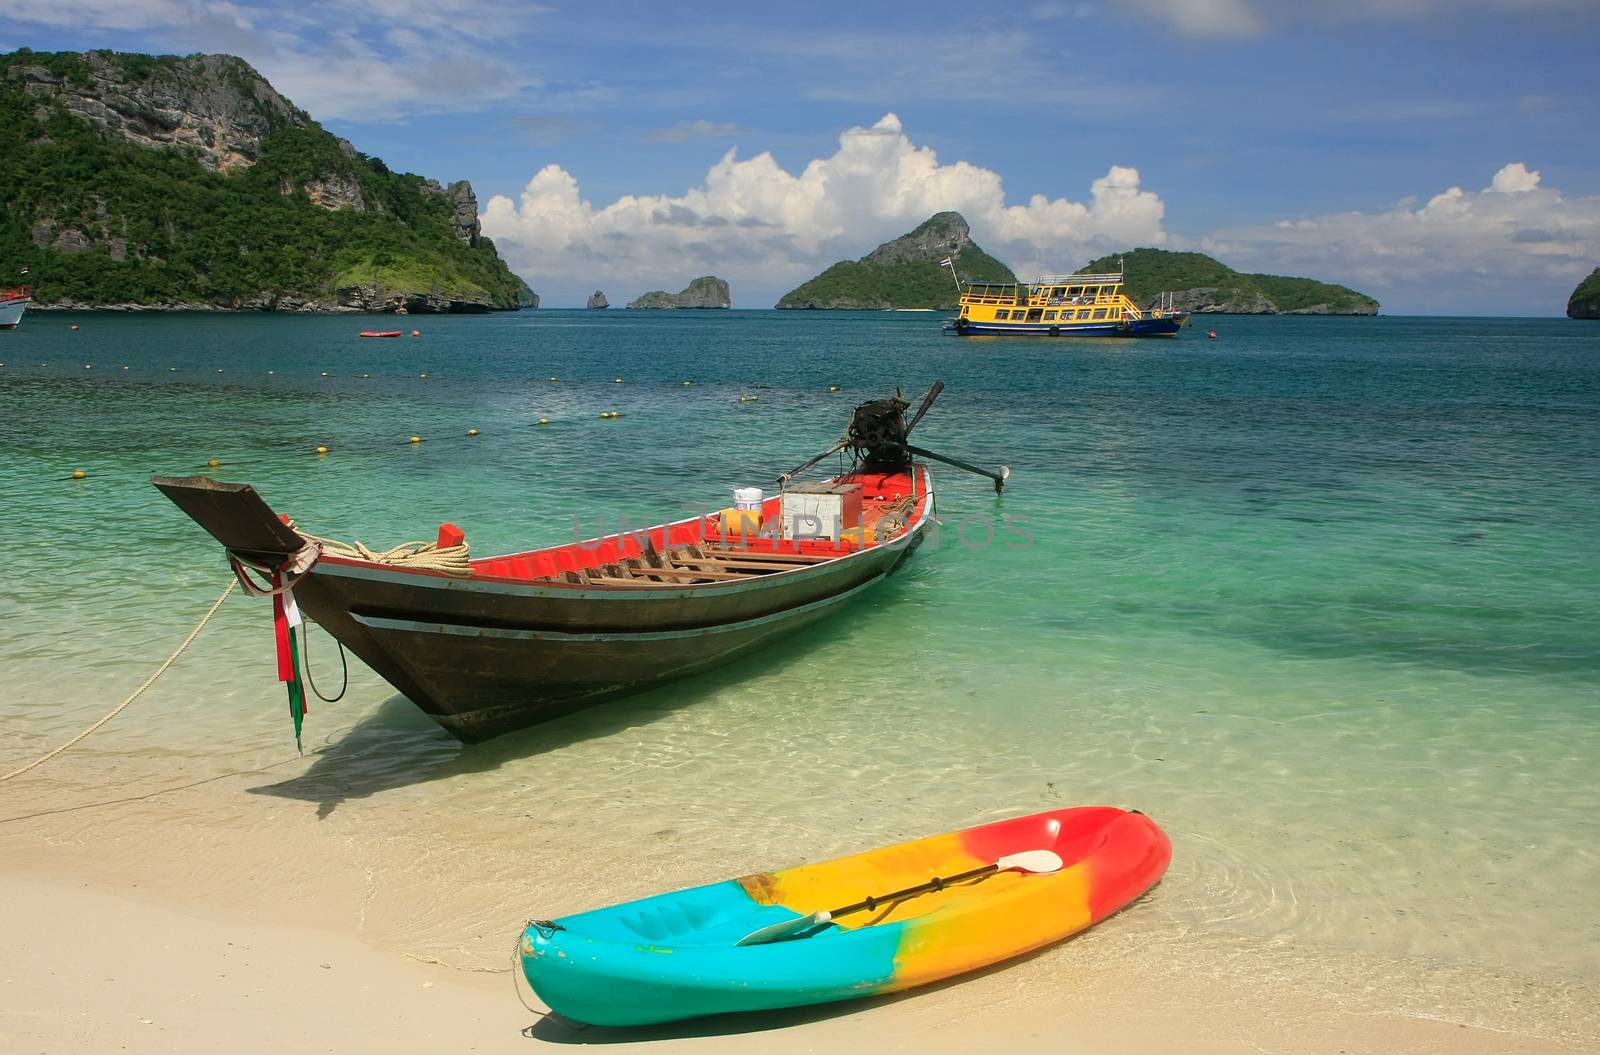 Longtail boat at Mae Koh island, Ang Thong National Marine Park, Thailand